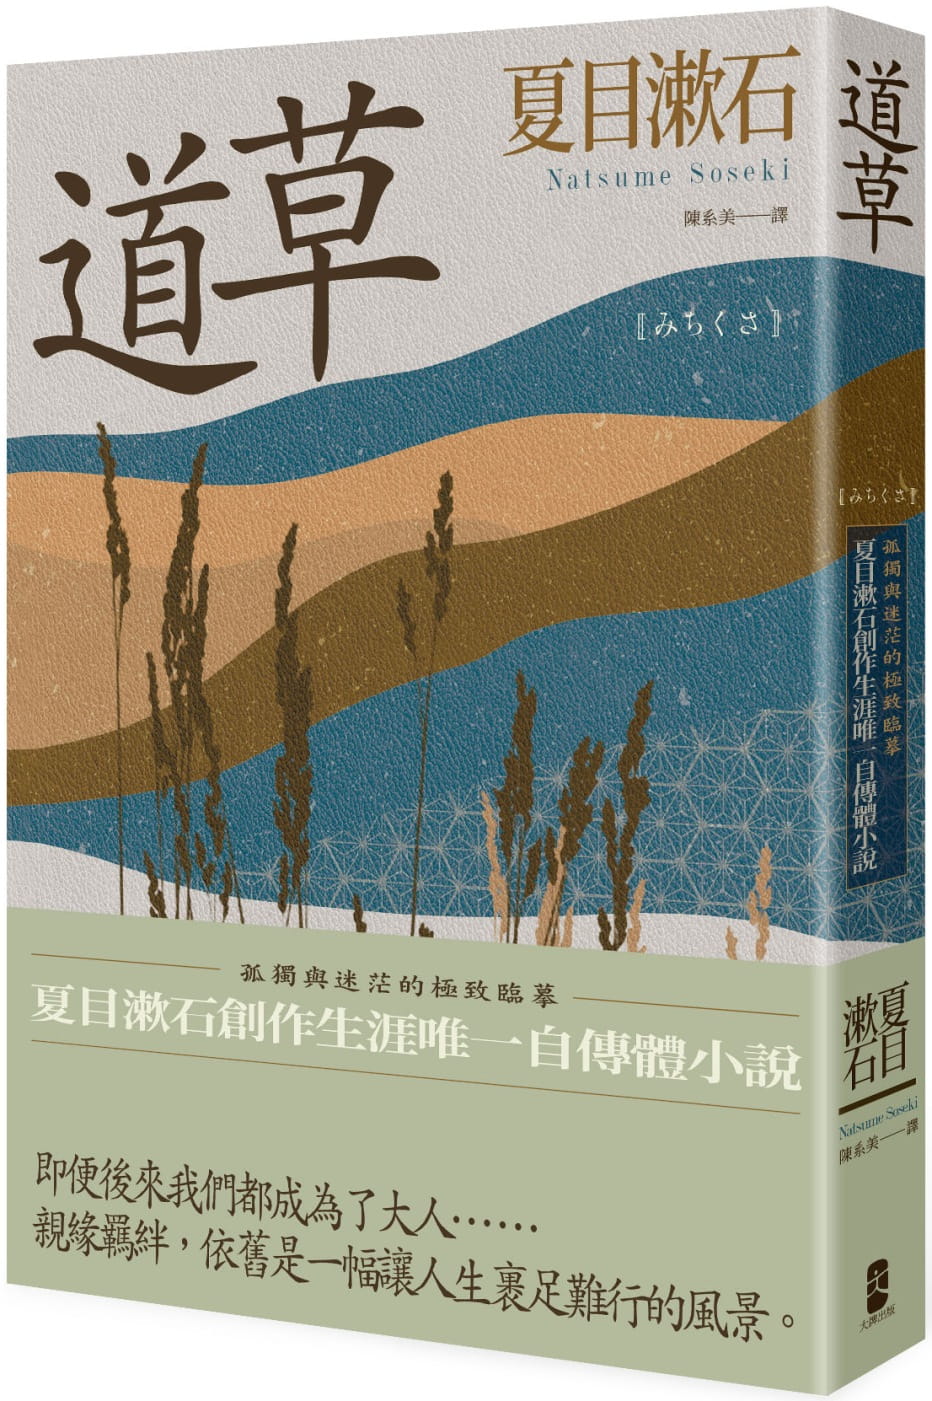 道草：孤獨與迷茫的極致臨摹，夏目漱石創作生涯唯一自傳體小說